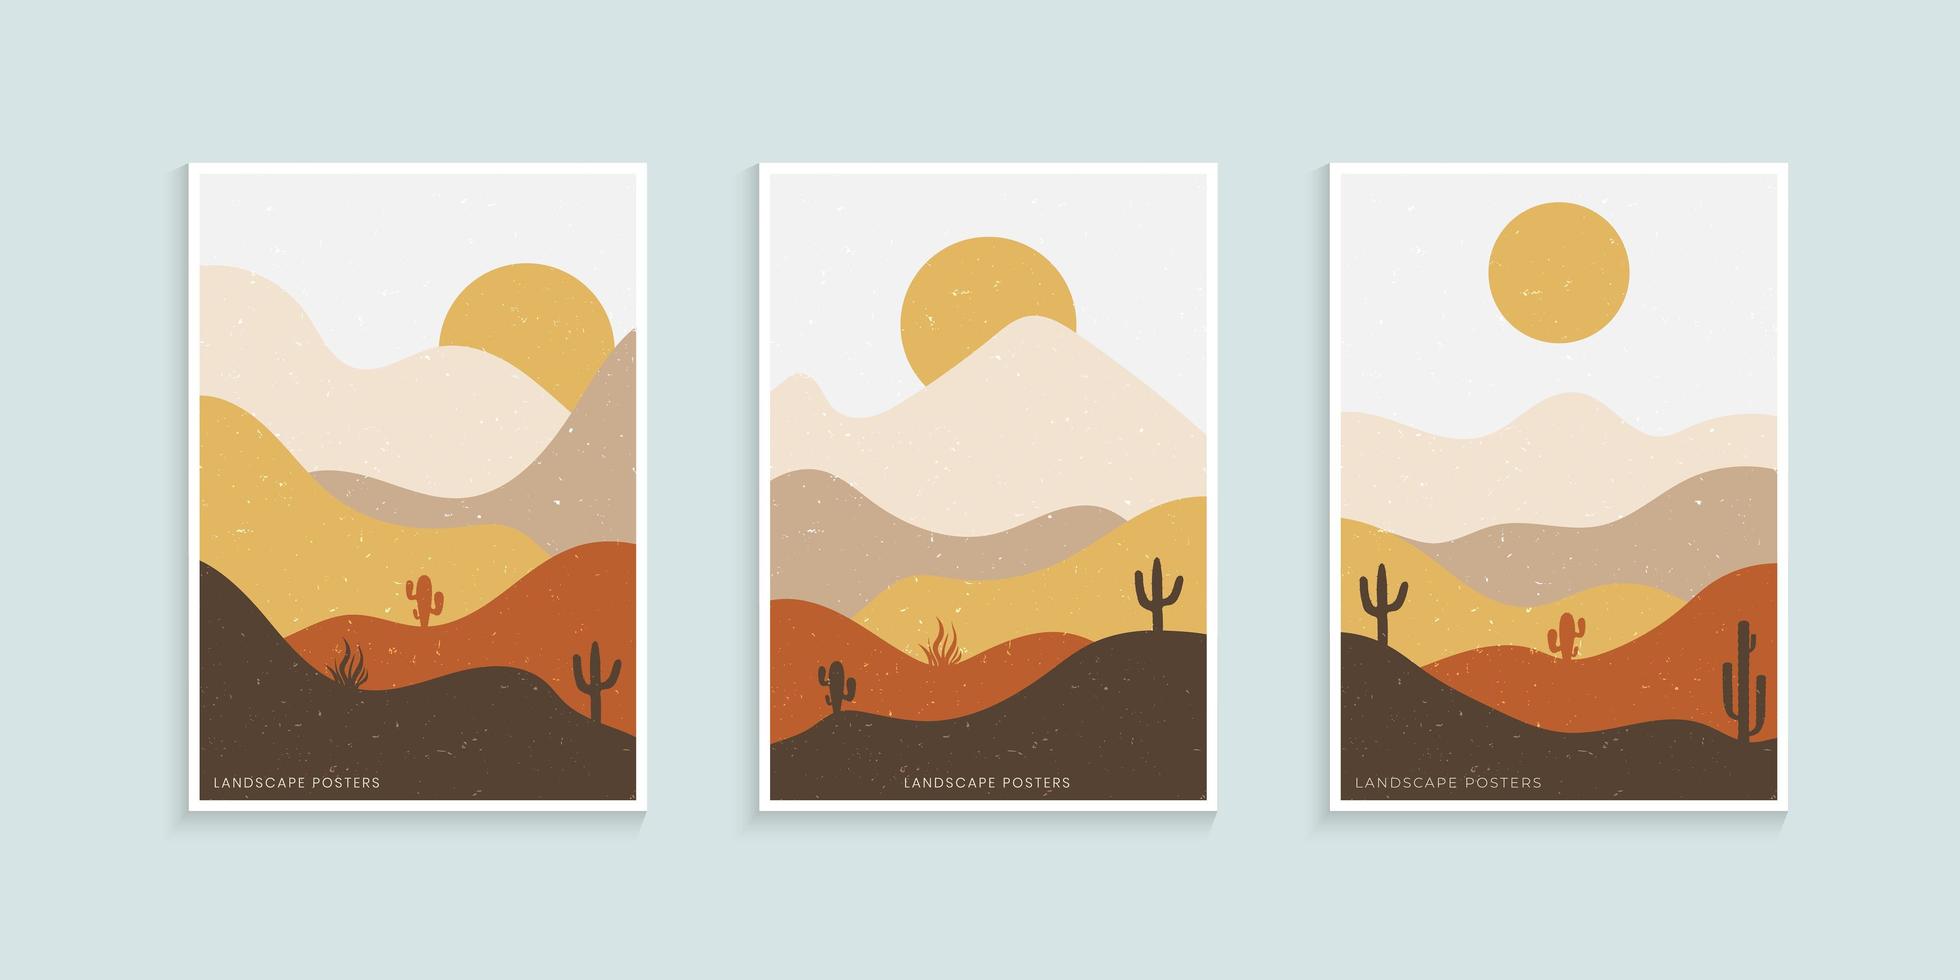 abstrakt minimalistisk landskapsaffisch, berg och kaktus minimalistisk väggdekor vektor